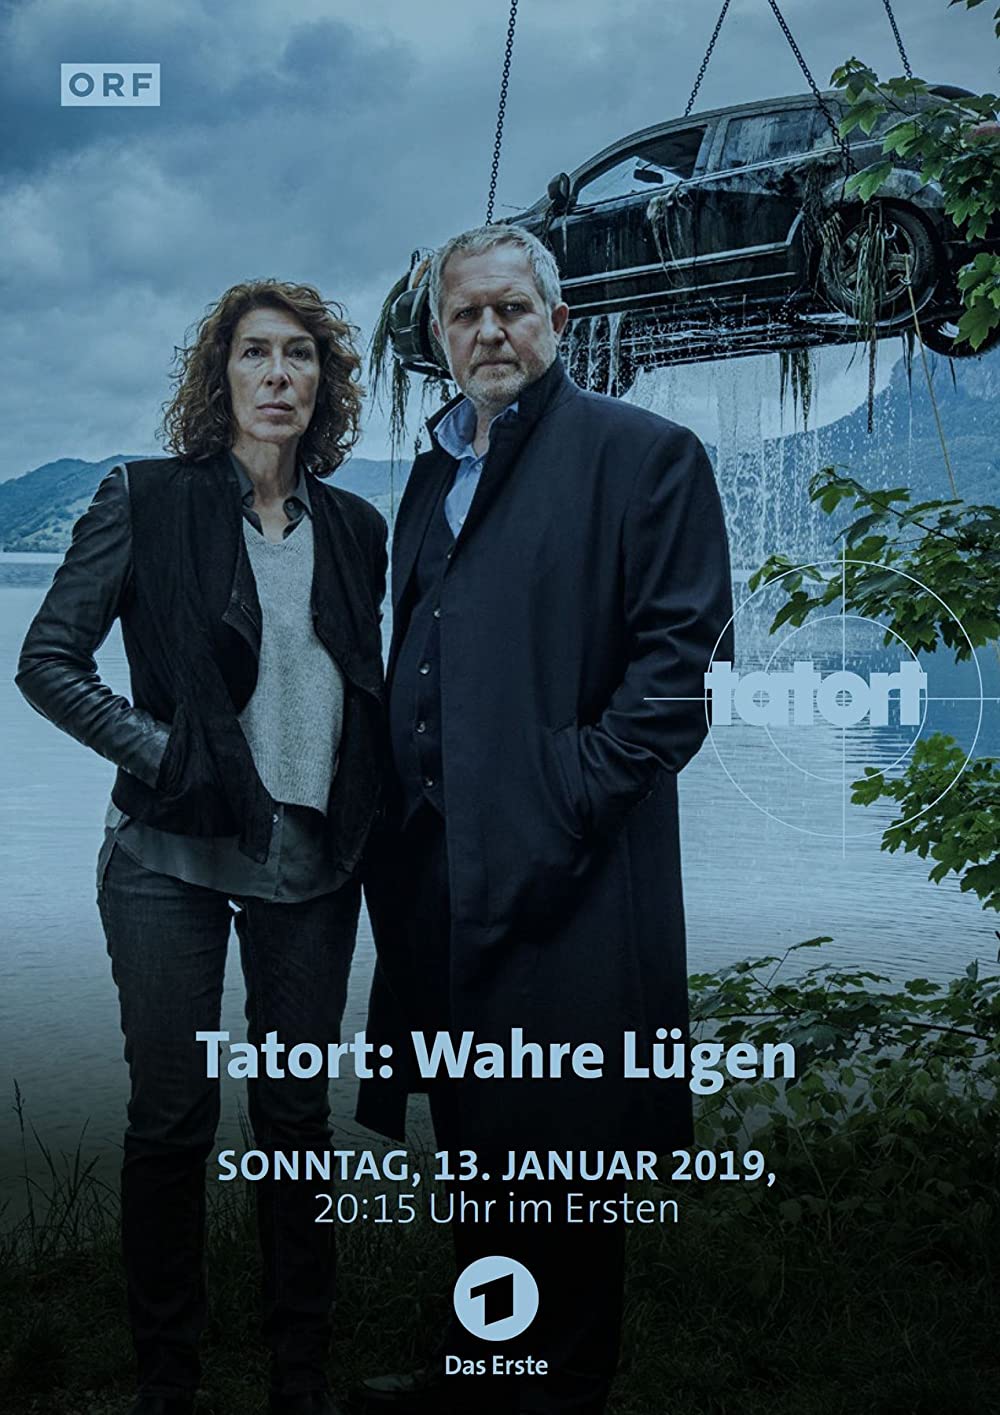 Filmbeschreibung zu Tatort: Wahre Lügen